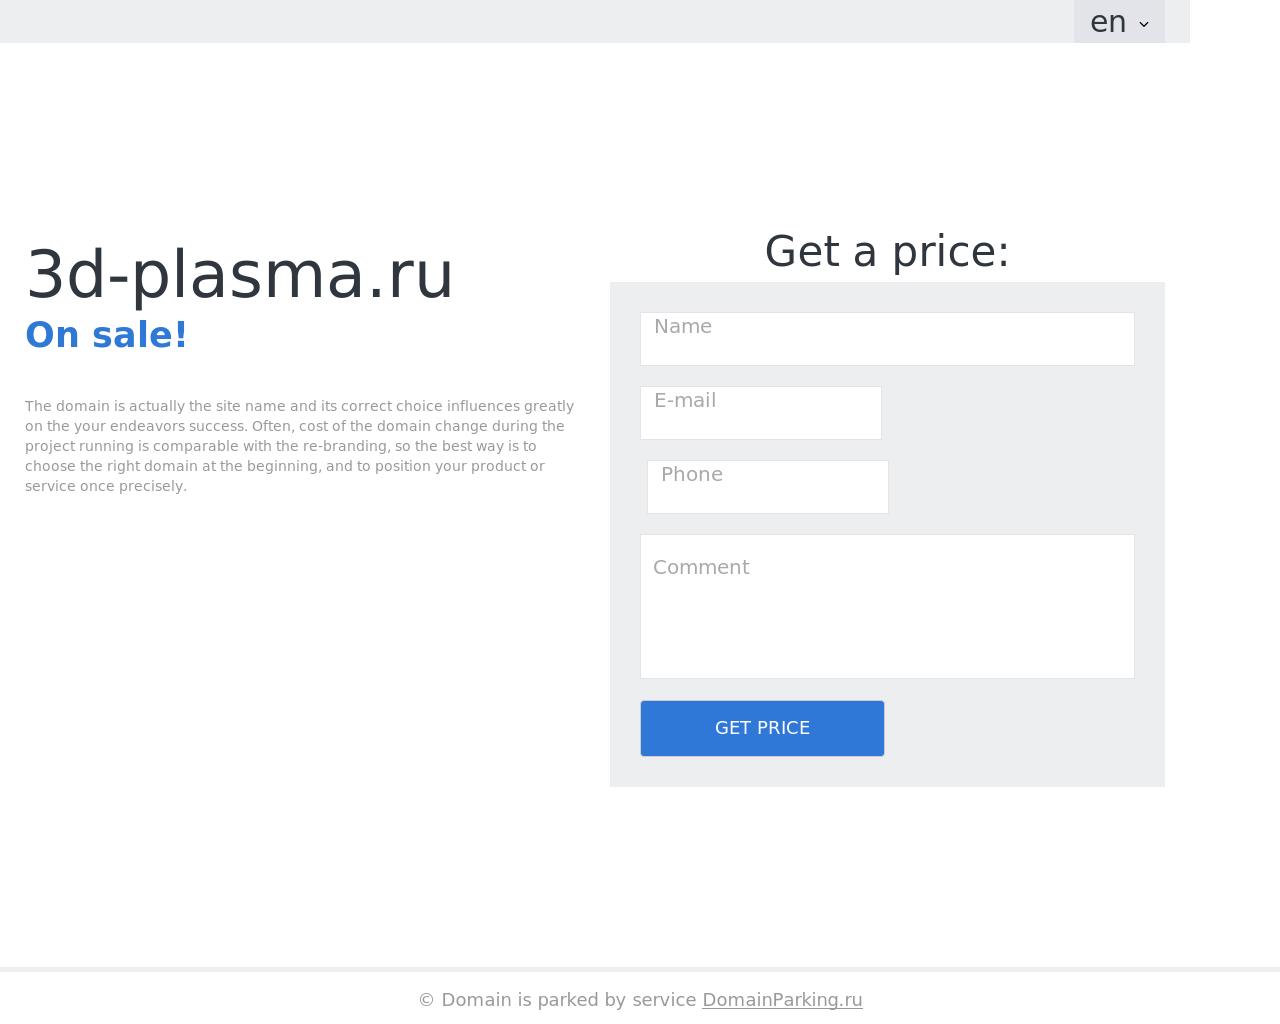 Изображение сайта 3d-plasma.ru в разрешении 1280x1024